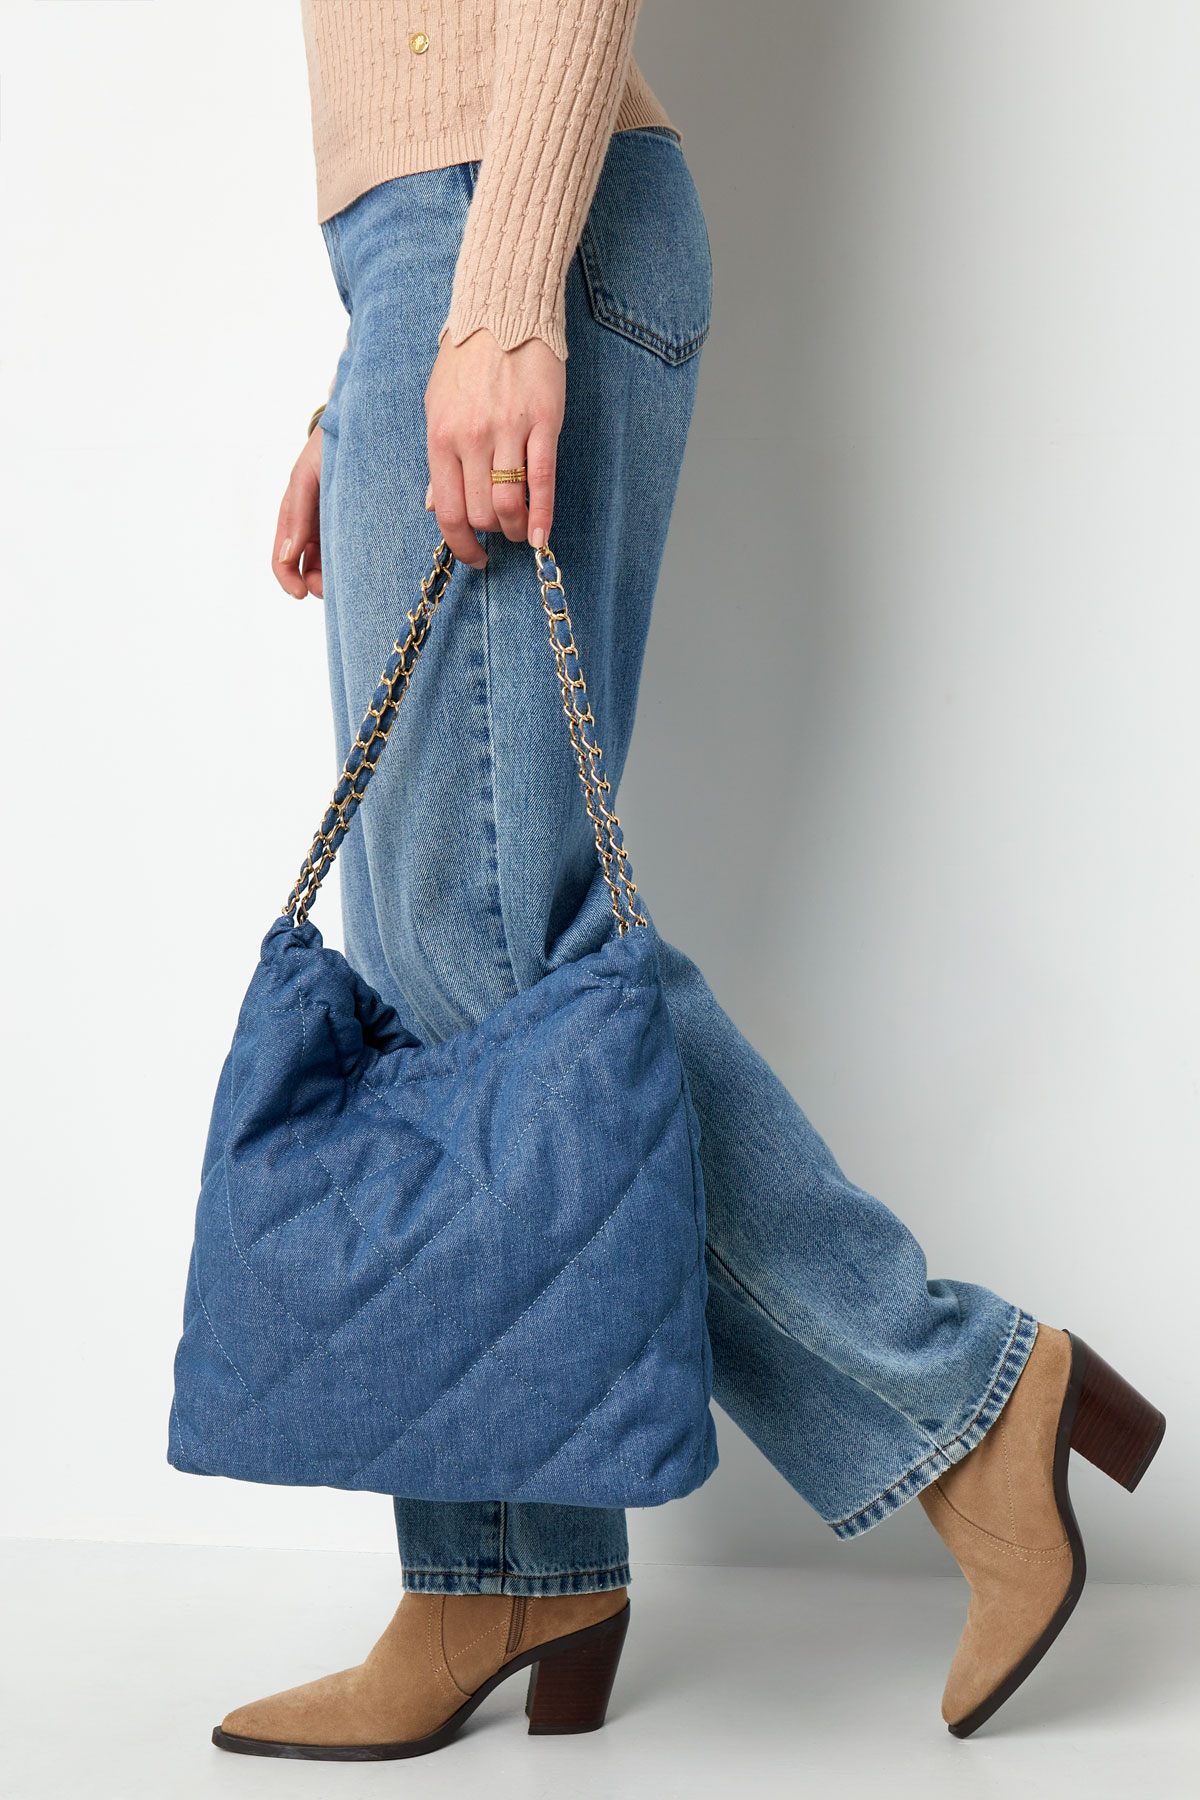 Jeanstasche mit gesticktem Motiv und Kette – dunkelblau Bild6